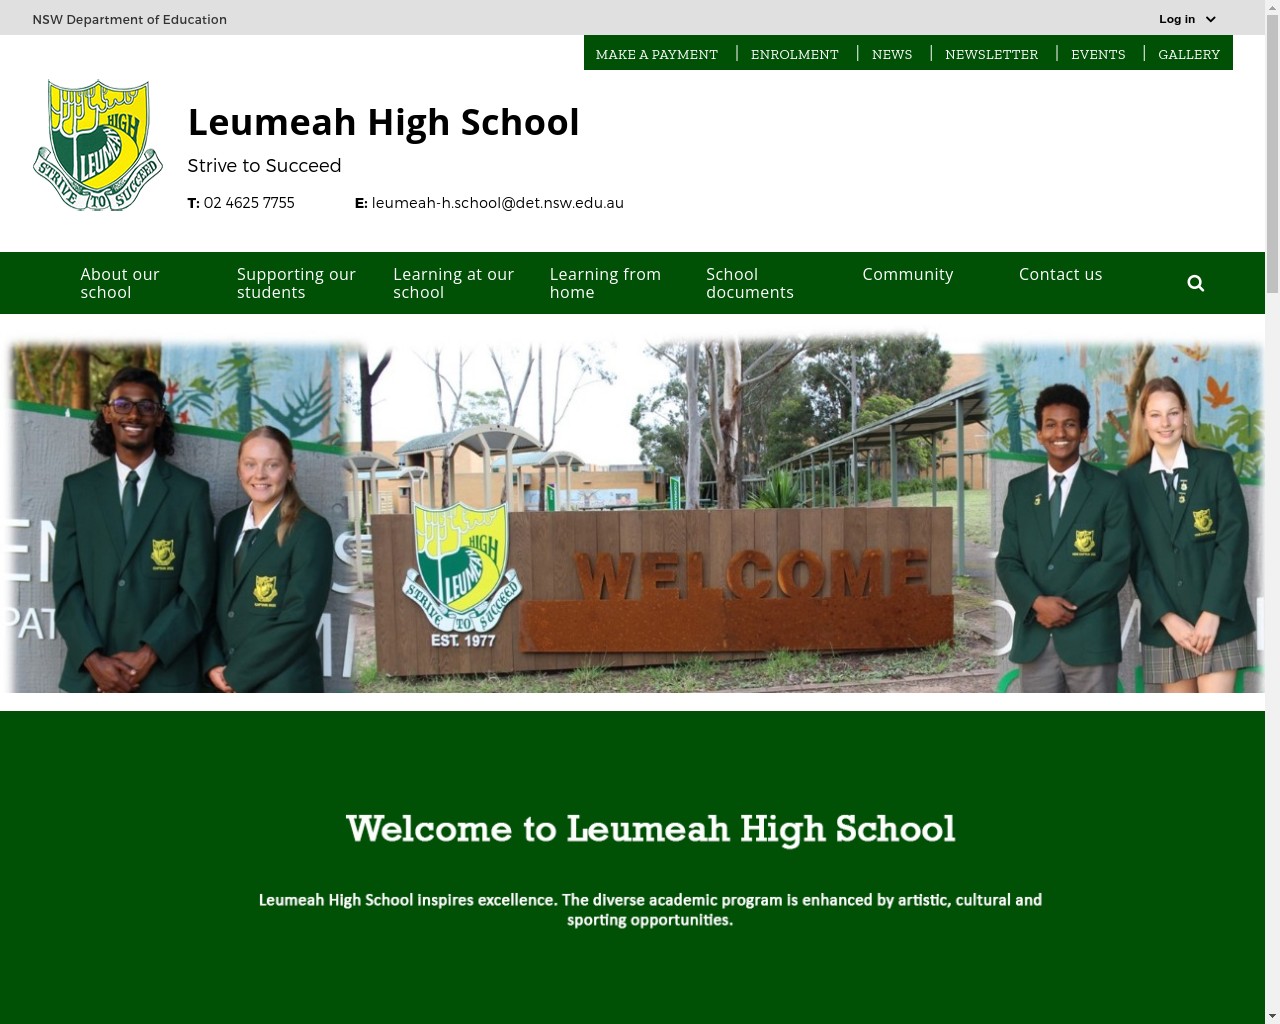 Leumeah High School